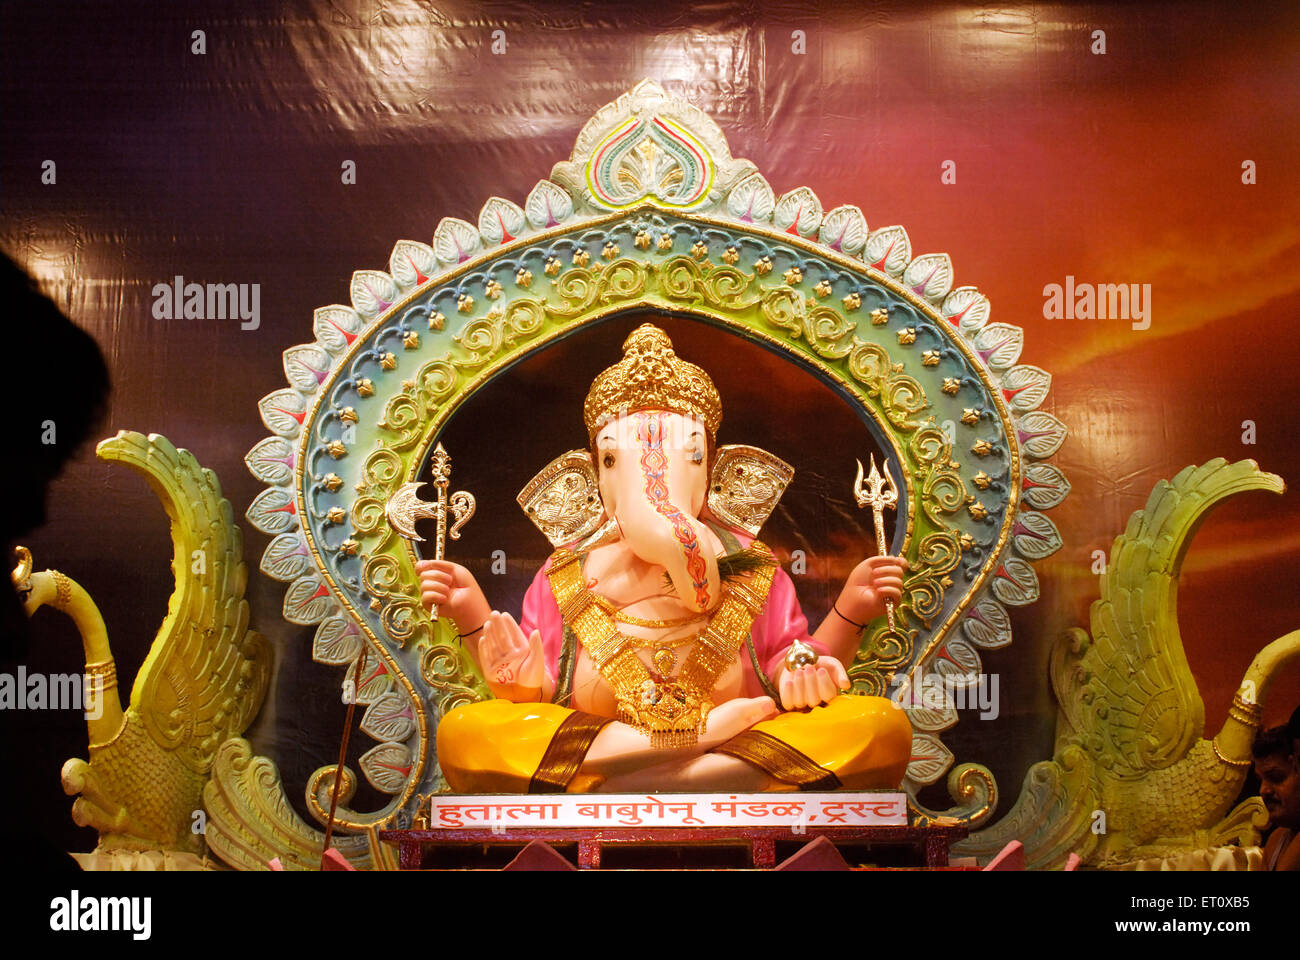 Richly decorated idol of Lord Ganesh elephant headed god ; Ganapati festival at Babu Genu Mandal ; Pune ; Maharashtra ; India Stock Photo